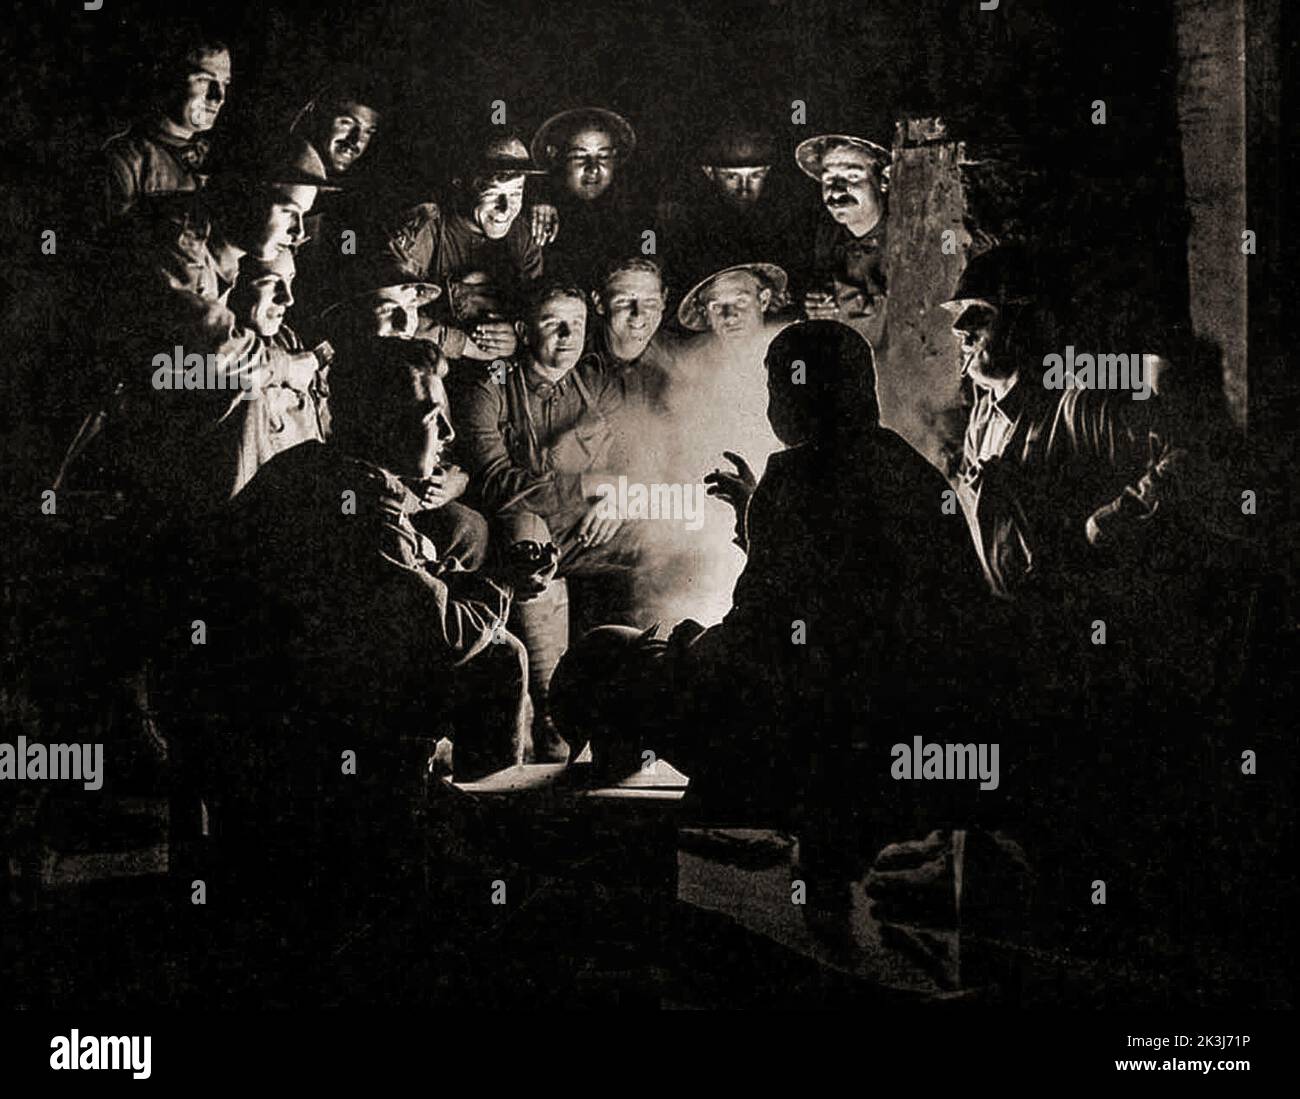 I soldati si riuniscono in un dugout per una storia, o un briefing militare in un dugout durante la terza battaglia di Ypres del 1917, progettata da Sir Douglas Haig per catturare la cresta di Passchendaele. Fotografia di Frank Hurley (1885 1962) un fotografo australiano. Foto Stock